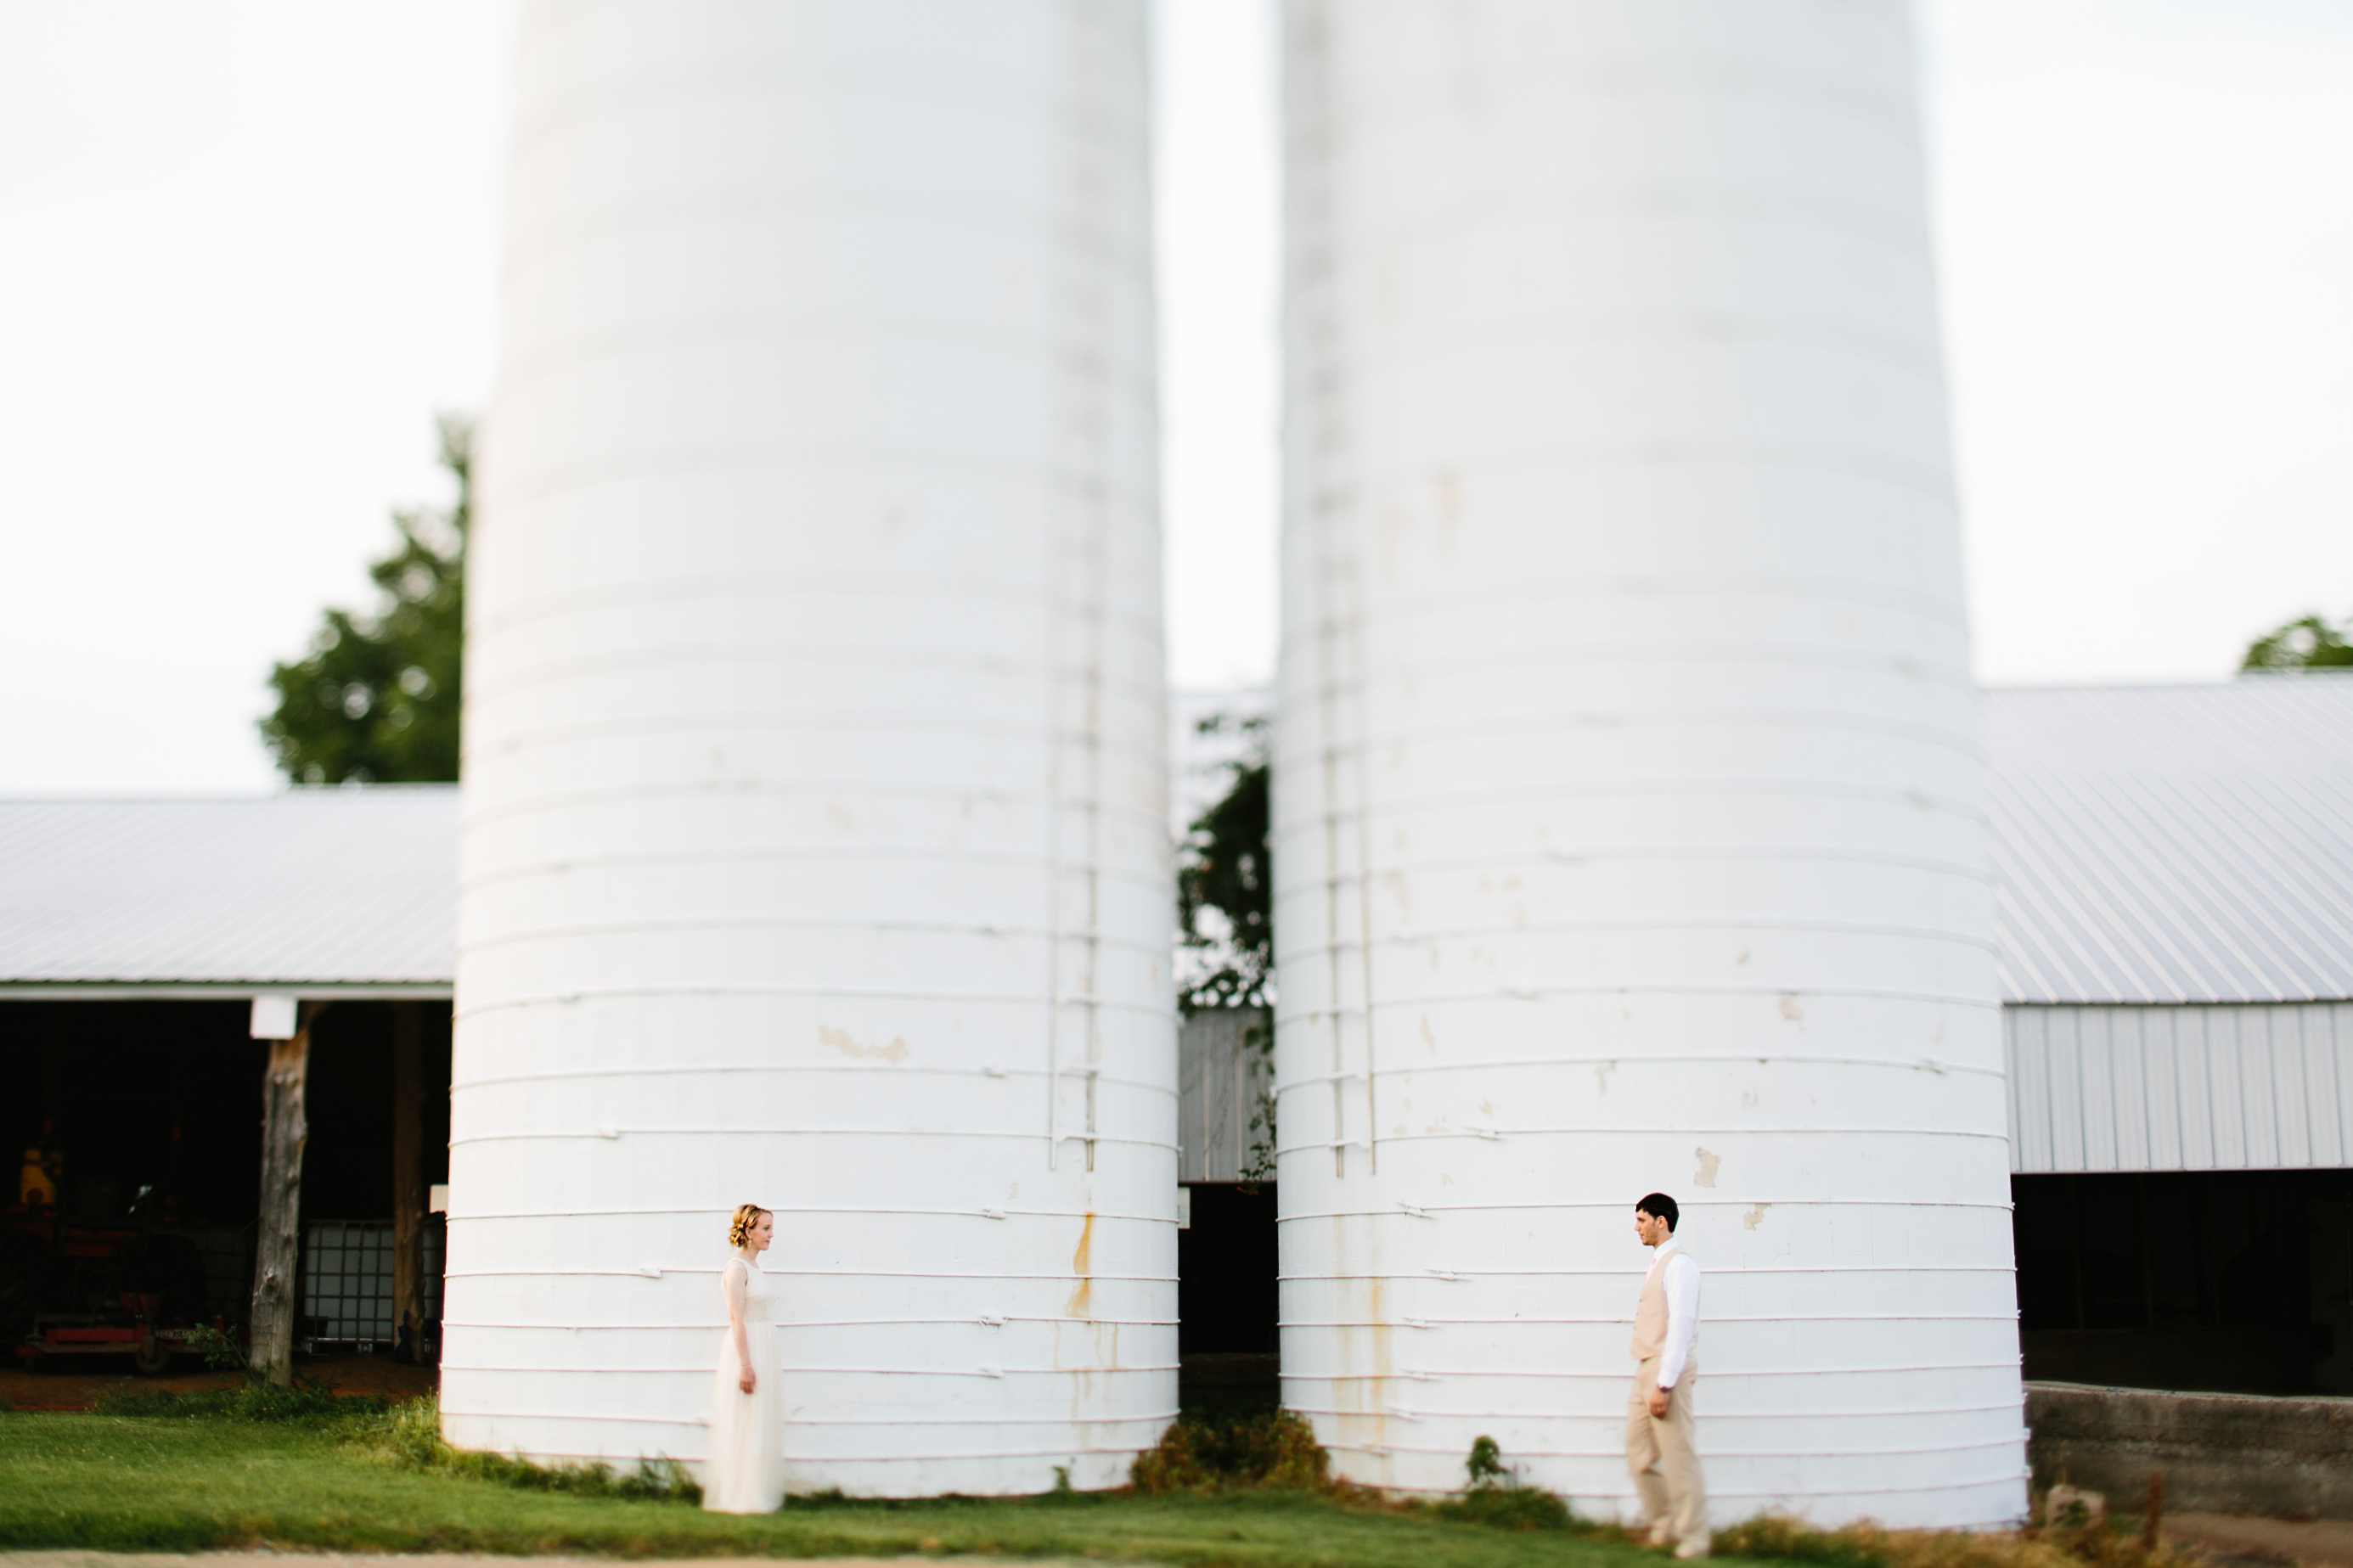 silo. wedding near a silo. farm wedding. vineyard wedding. winery wedding. creative wedding photos. unique wedding photos. Tennessee wedding photographe